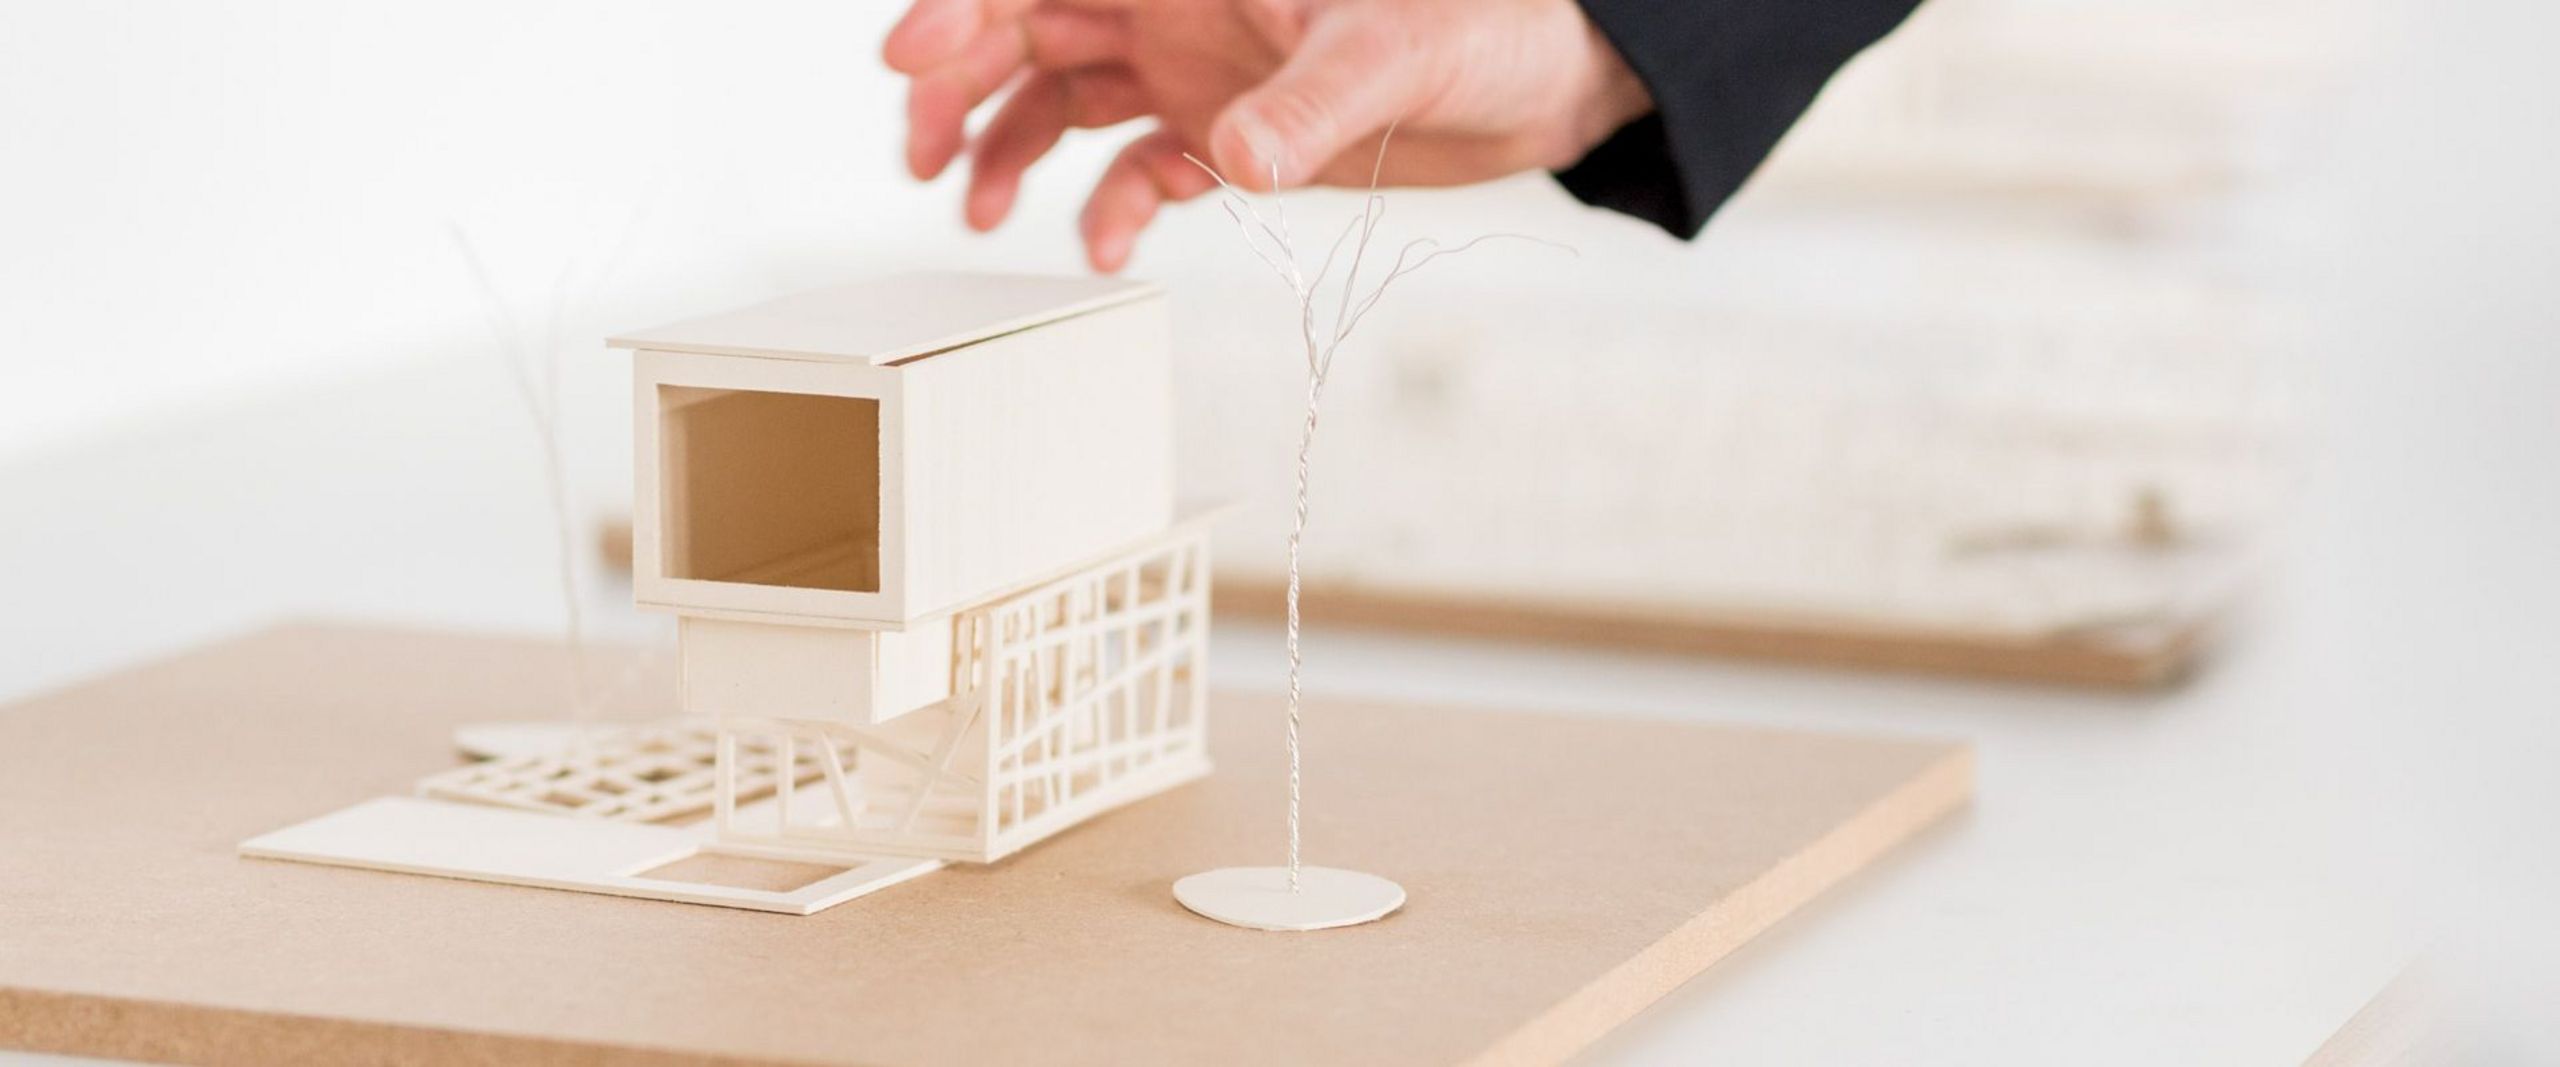 Eine Hand greift nach einem Modell eines Hauses. 